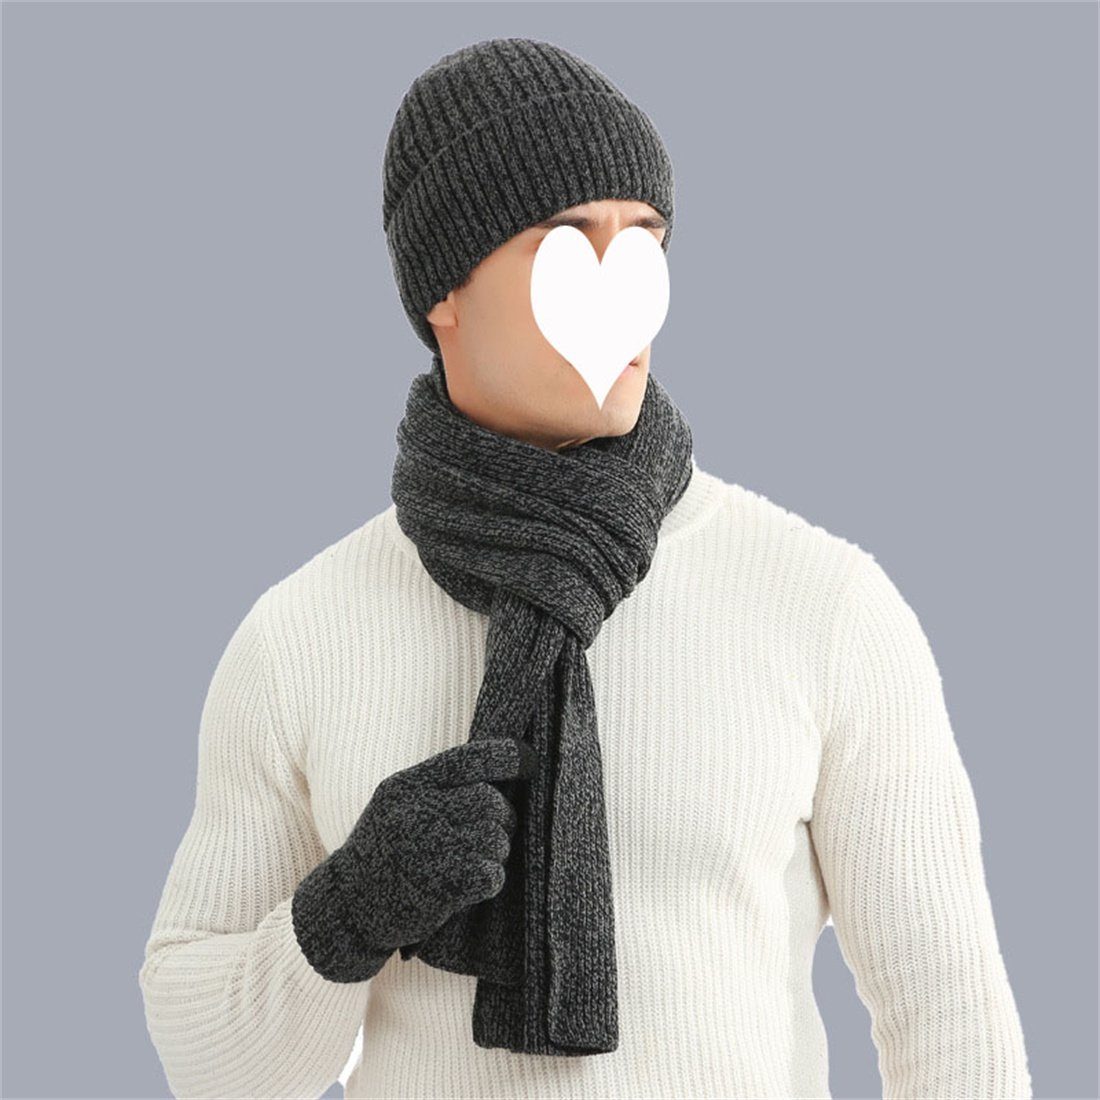 DÖRÖY Strickmütze Wintermütze aus verdickter Wolle,Warmer Mützenschal Handschuhe 3er Set dunkelgrau